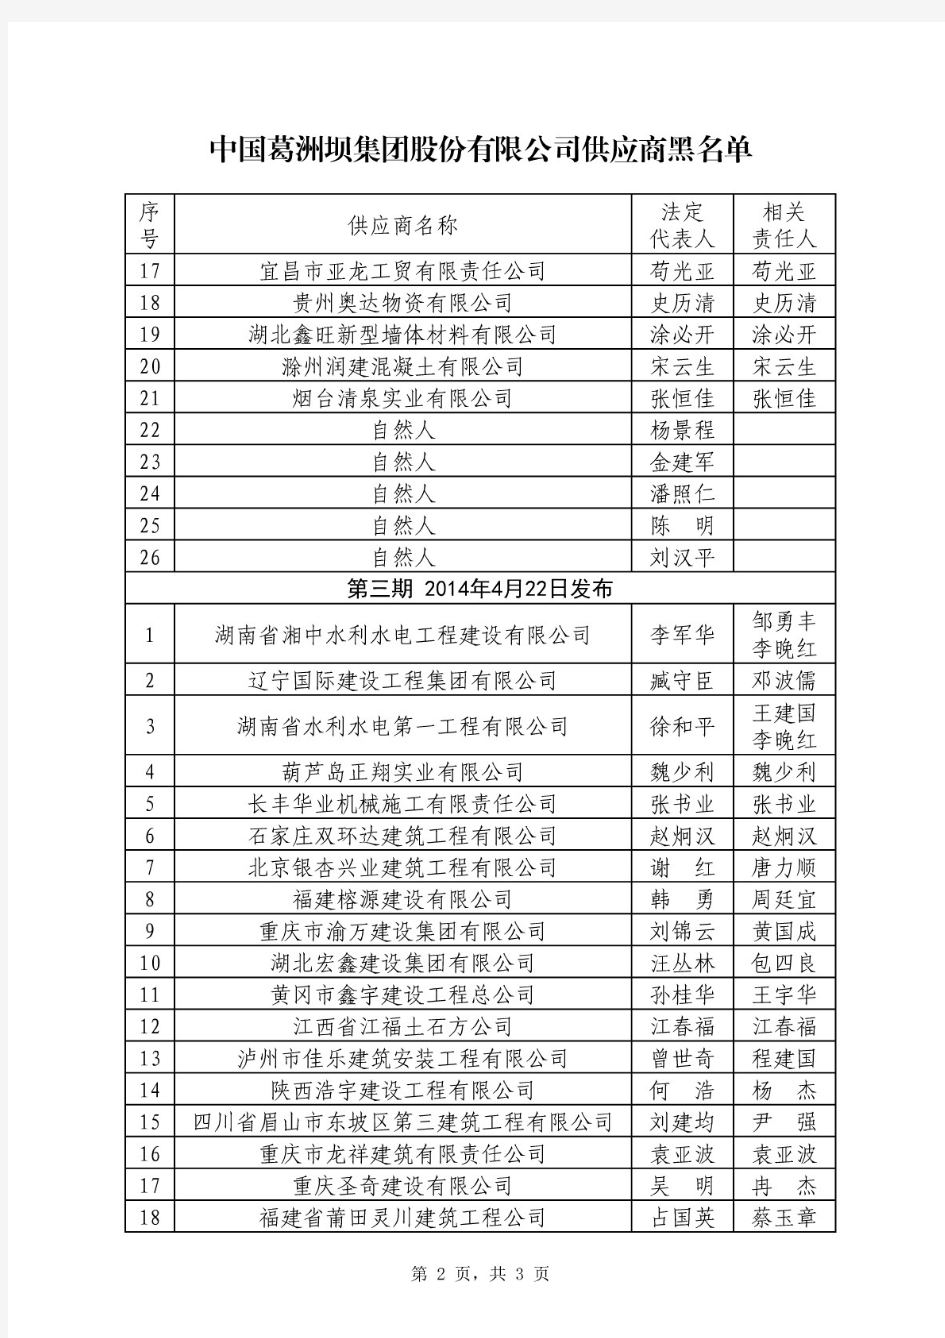 中国葛洲坝集团股份有限公司供应商黑名单